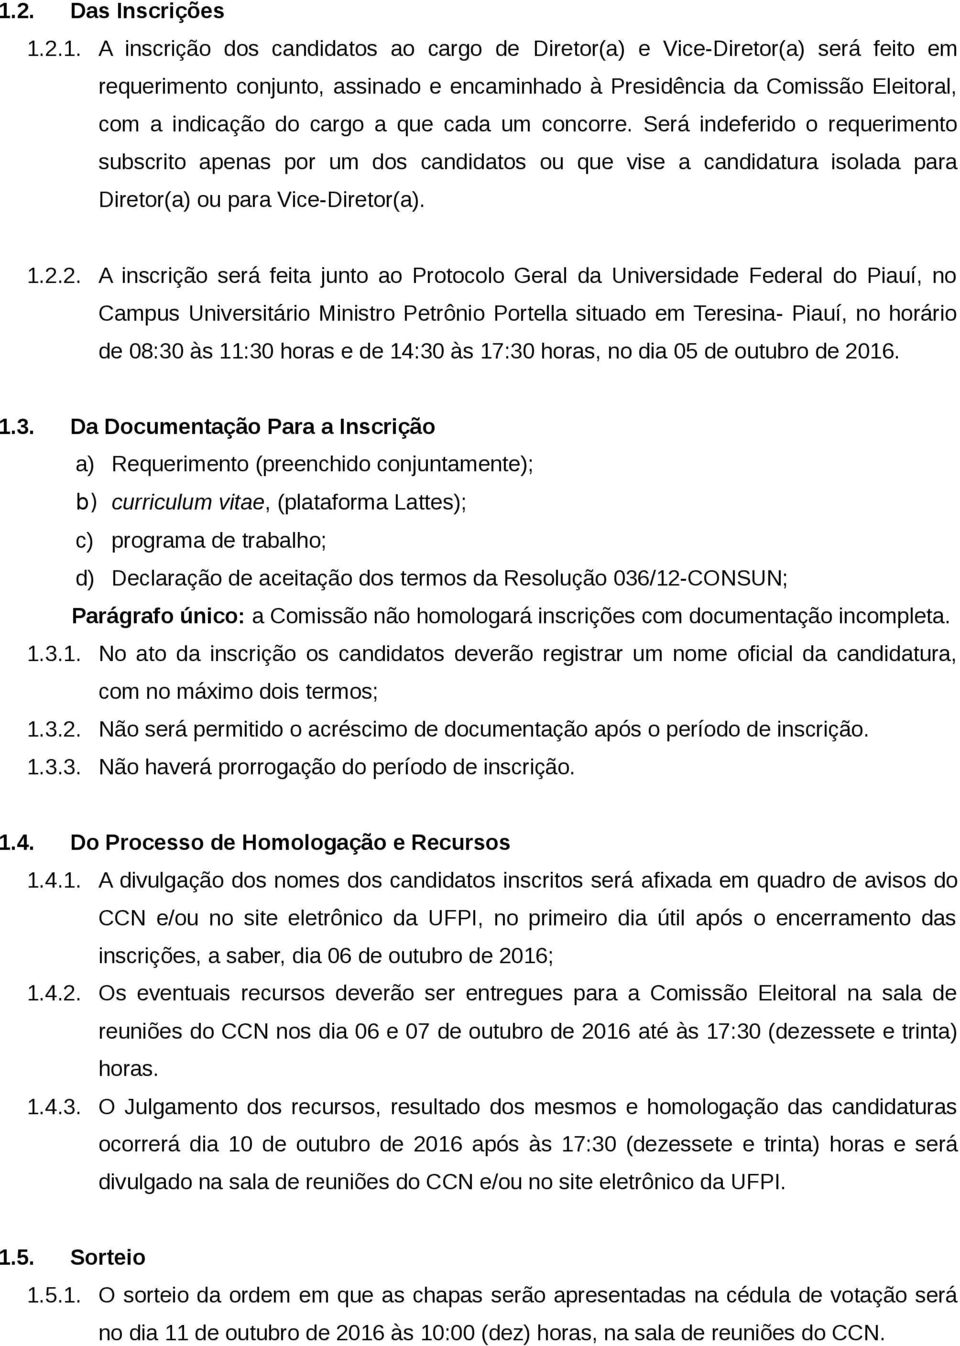 2. A inscrição será feita junto ao Protocolo Geral da Universidade Federal do Piauí, no Campus Universitário Ministro Petrônio Portella situado em Teresina- Piauí, no horário de 08:30 às 11:30 horas